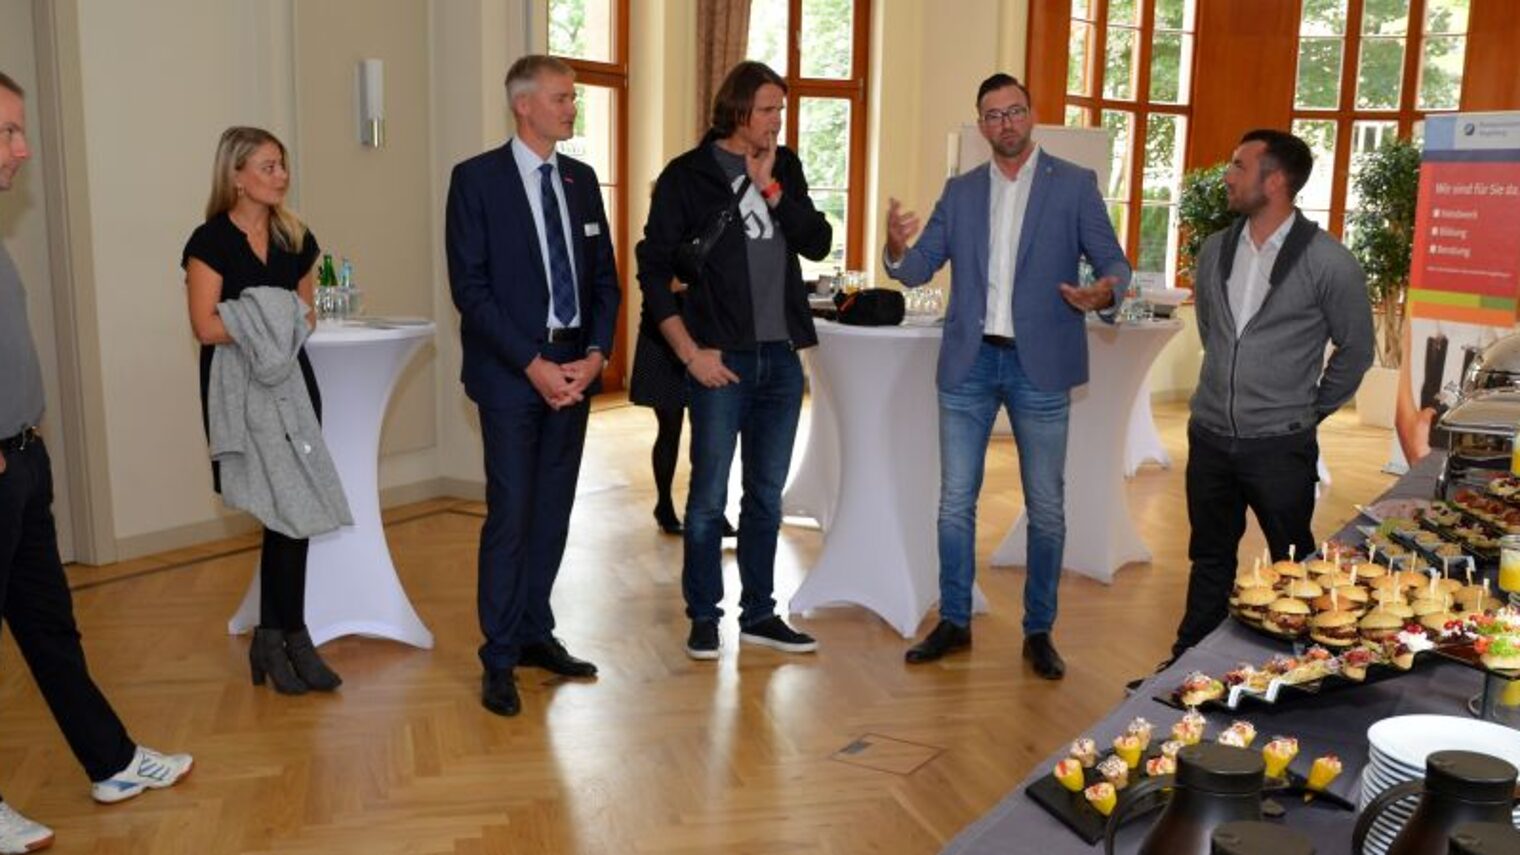 Die Geschäftsführer der Exquisit Catering GmbH Denny Walkowiak und Steven Pach präsentierten im Haus des Handwerks ihr Geschäftskonzept.